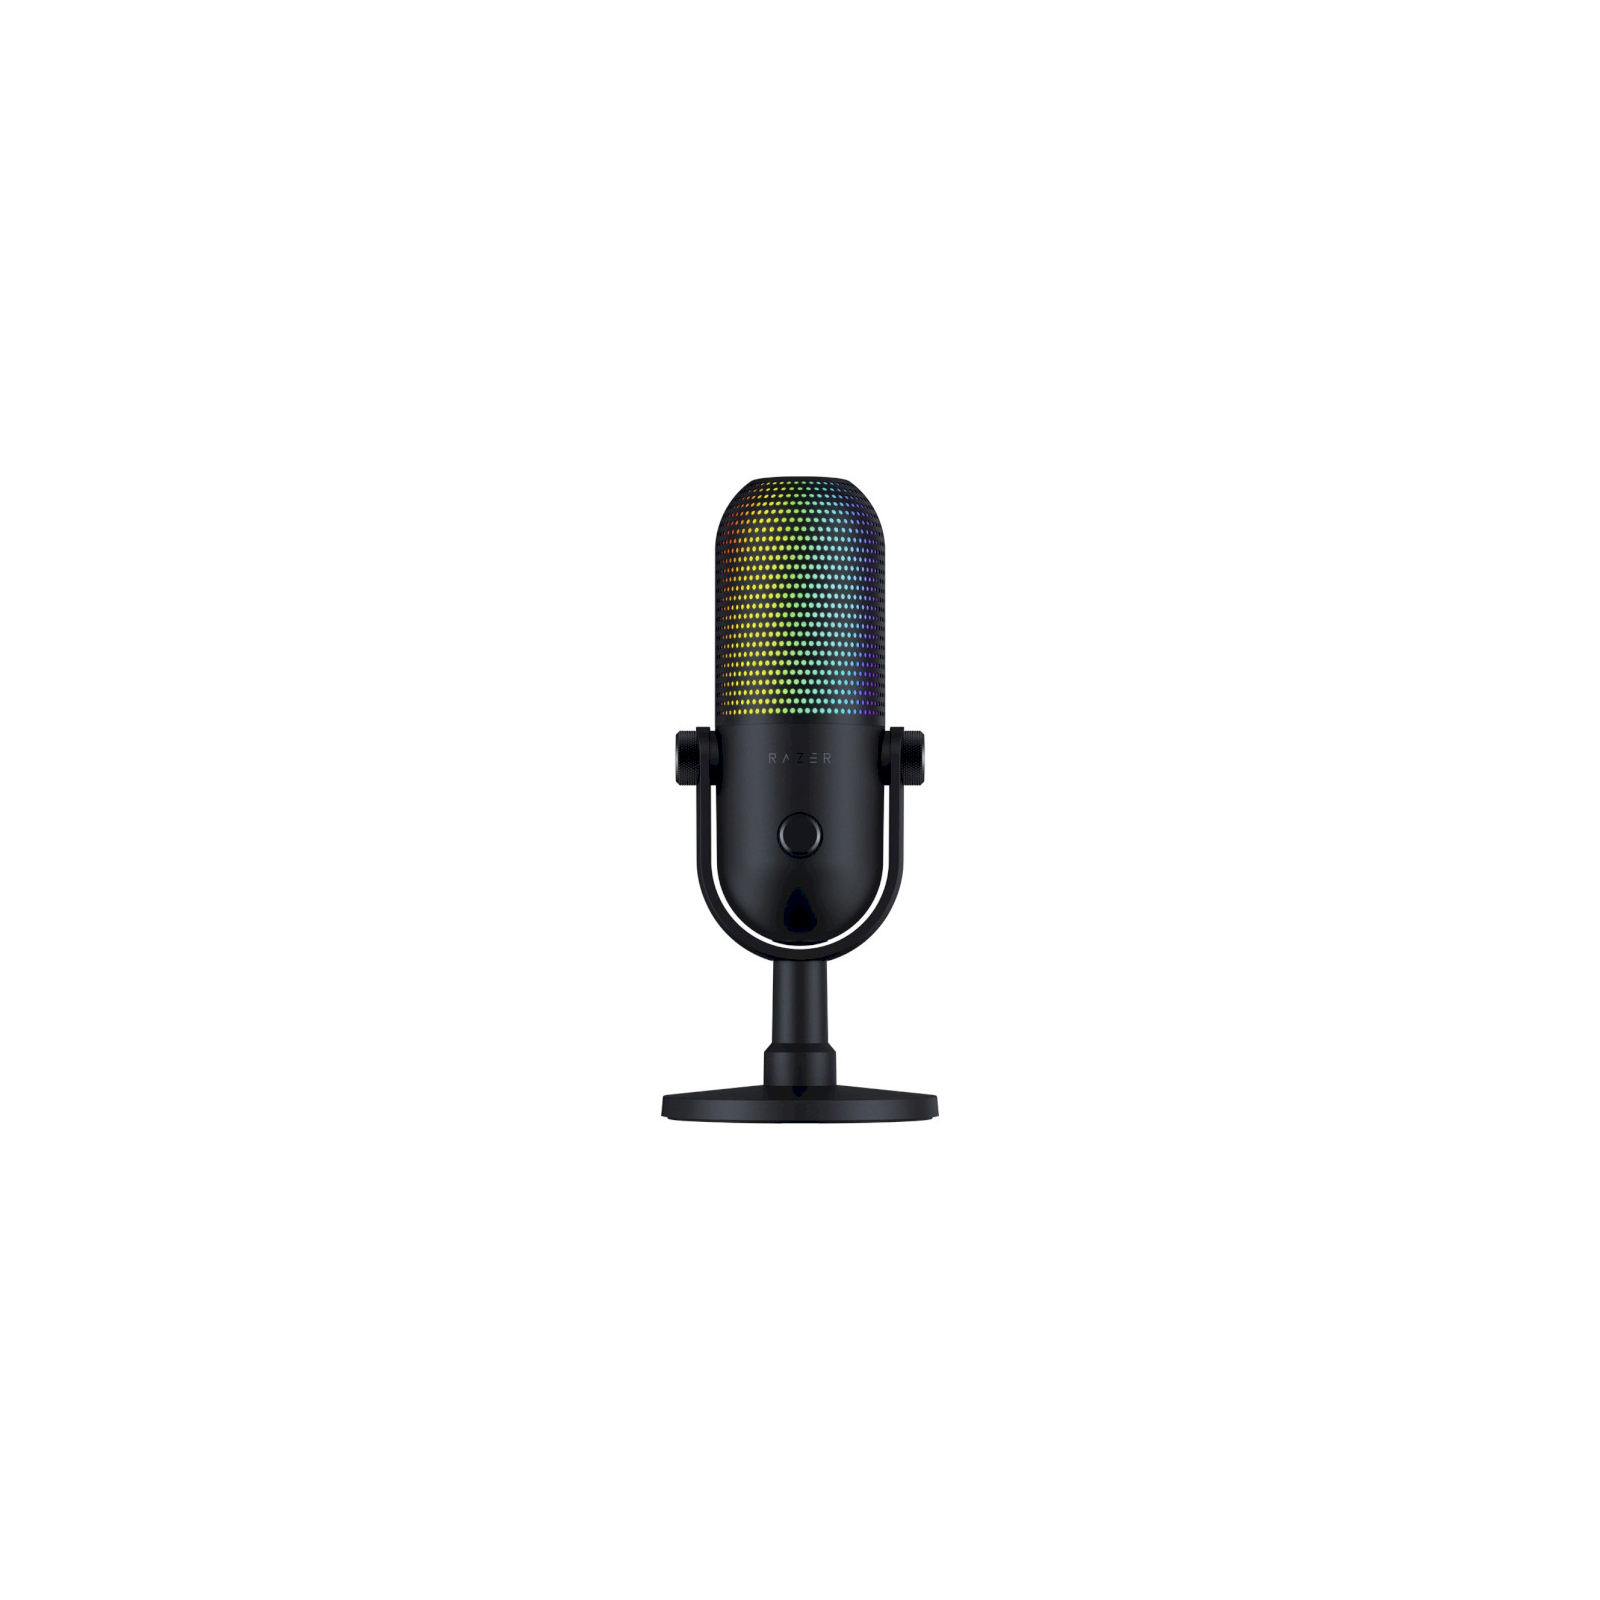 Микрофон Razer Seiren V3 Chroma (RZ19-05060100-R3M1)